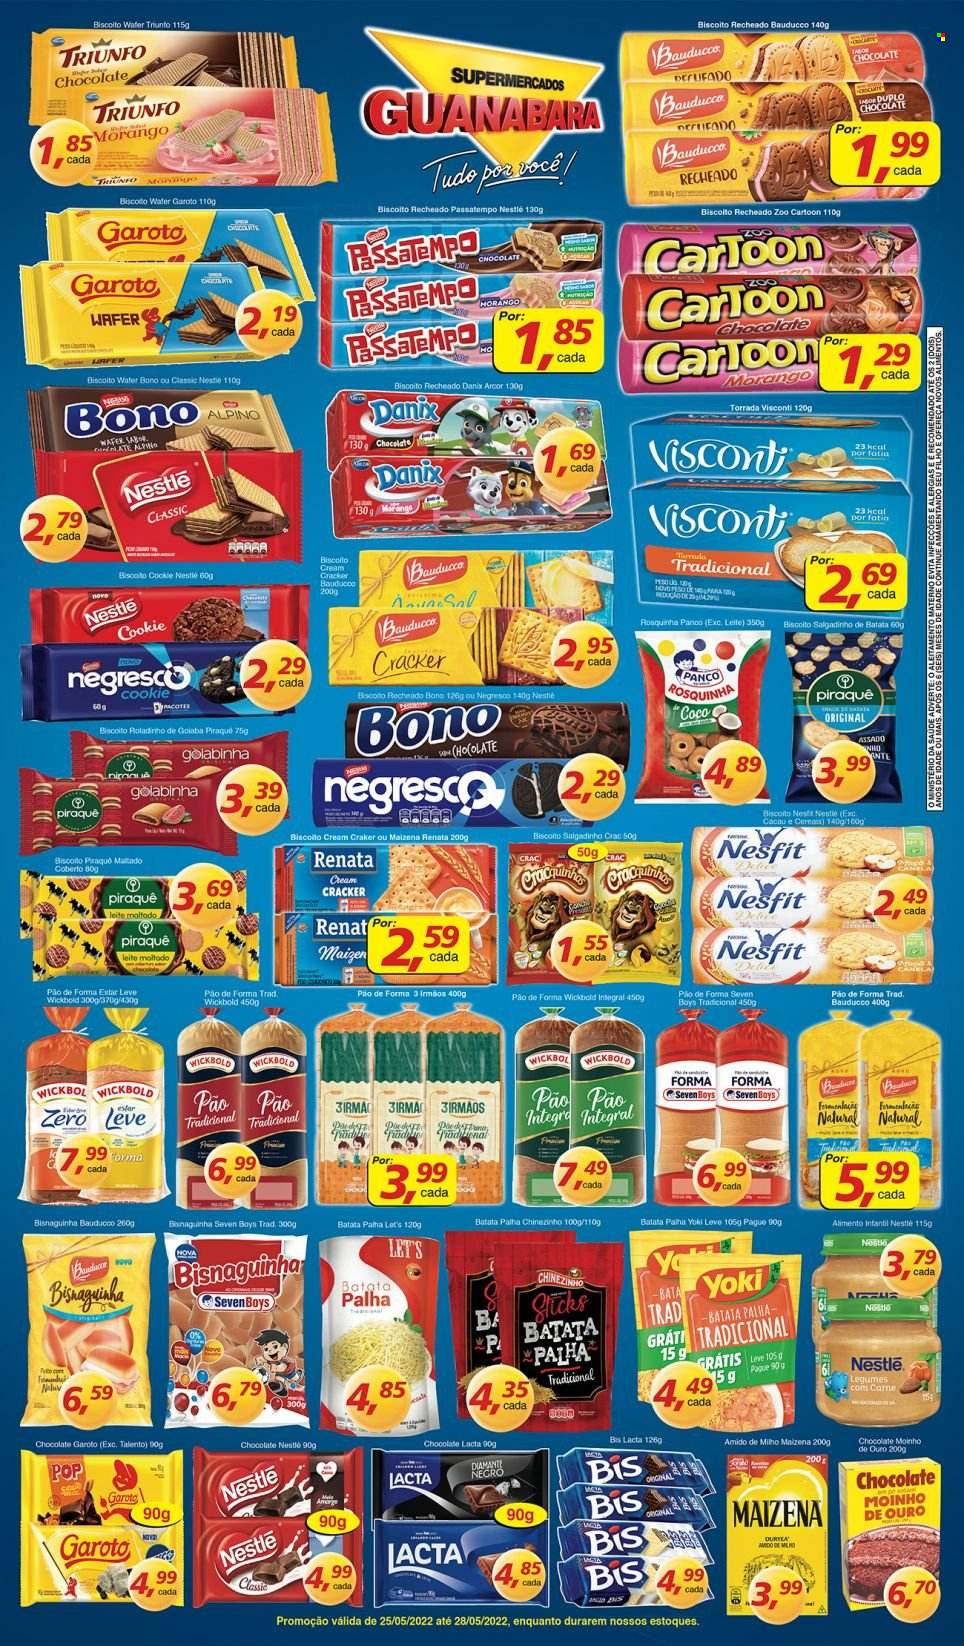 thumbnail - Folheto Supermercados Guanabara - 25/05/2022 - 28/05/2022 - Produtos em promoção - legumes, pão, pão de forma, bisnaguinha, waffle, Yoki, batata palha, biscoito, Nestlé, biscoito recheado, rosquinhas, salgadinho, cracker, pão torrado. Página 4.